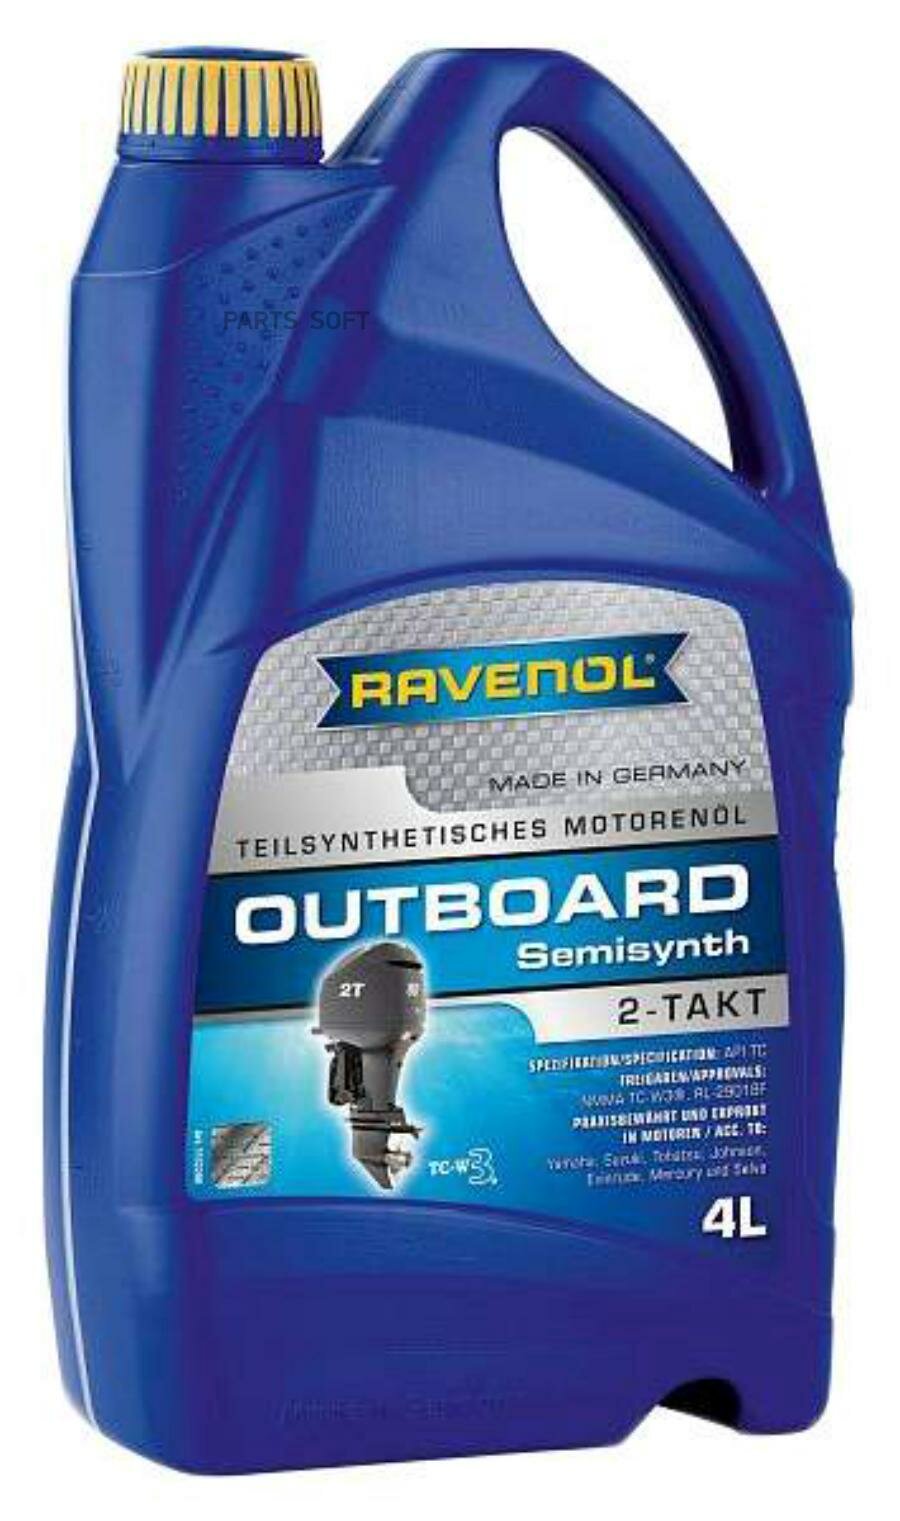 Моторное масло для 2Т лод.моторов RAVENOL Outboardoel 2T teilsynth. ( 4л) new RAVENOL / арт. 115220000401999 - (1 шт)